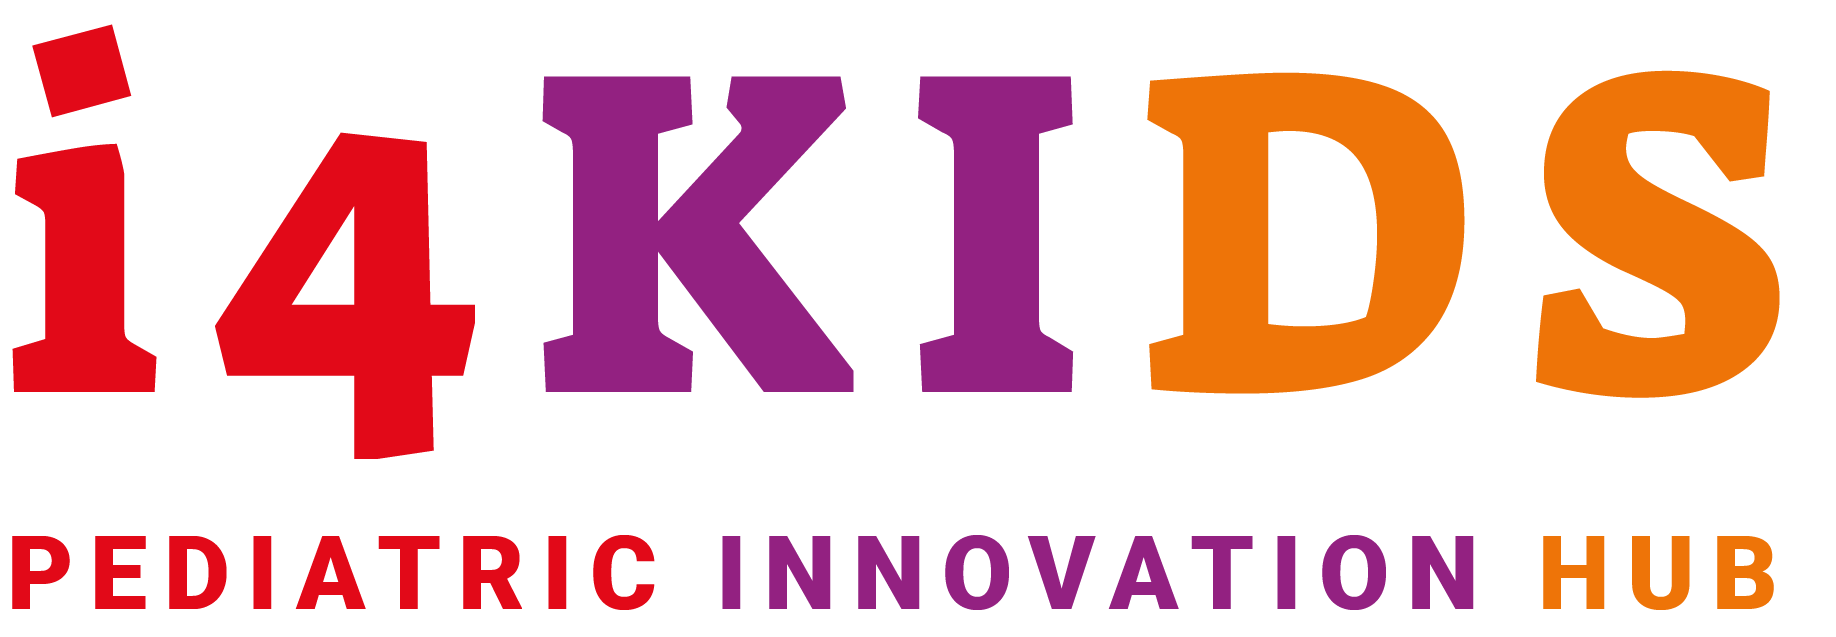 Hub de Innovación Pediátrica · i4Kids | Innovación | Institut de Recerca SJD